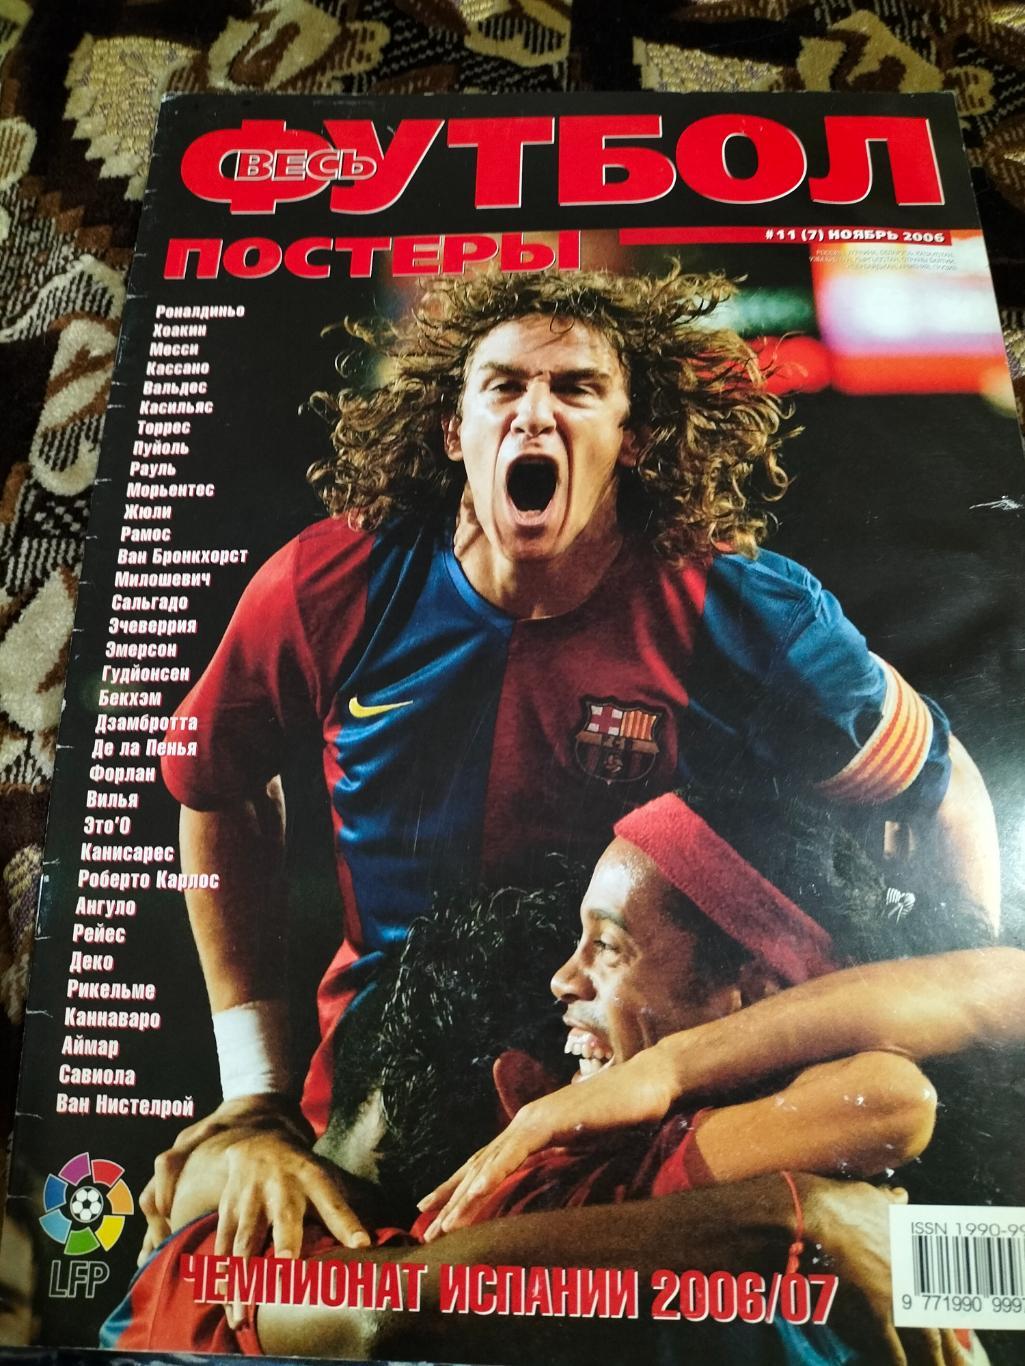 Весь Футбол-постеры ноябрь 2006 года.